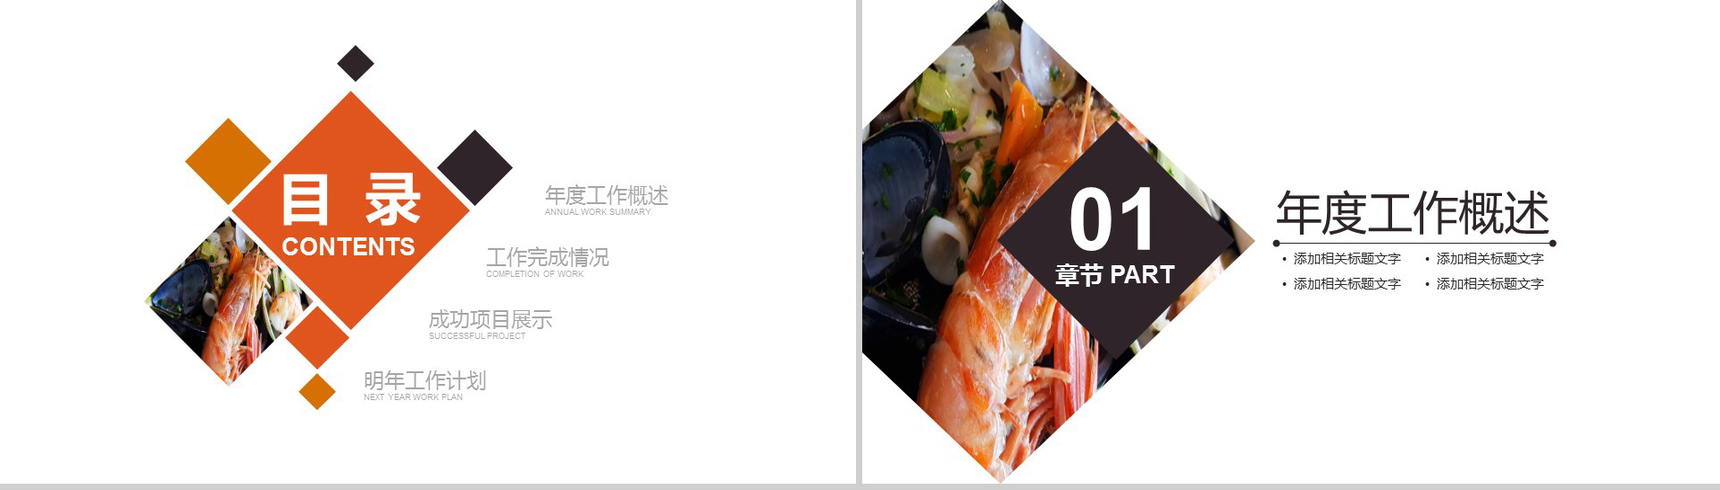 大气精美商务海鲜推广宣传餐饮美食年终汇报PPT模板-2